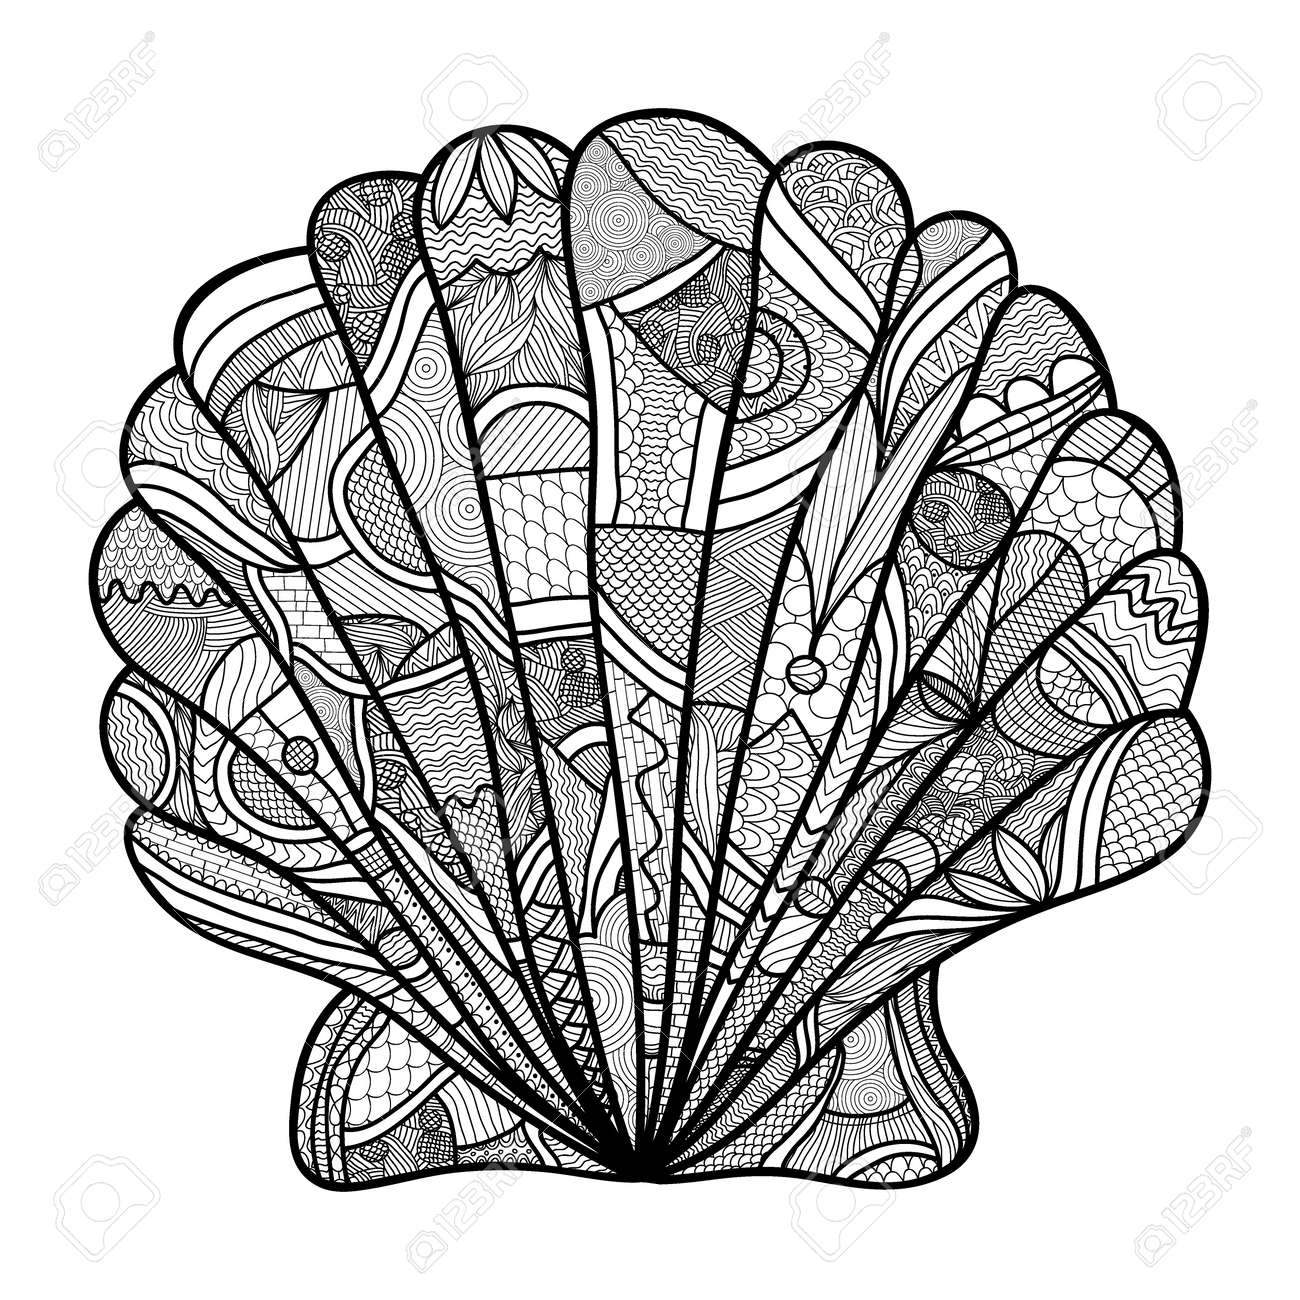 Seashell hand drawn shell